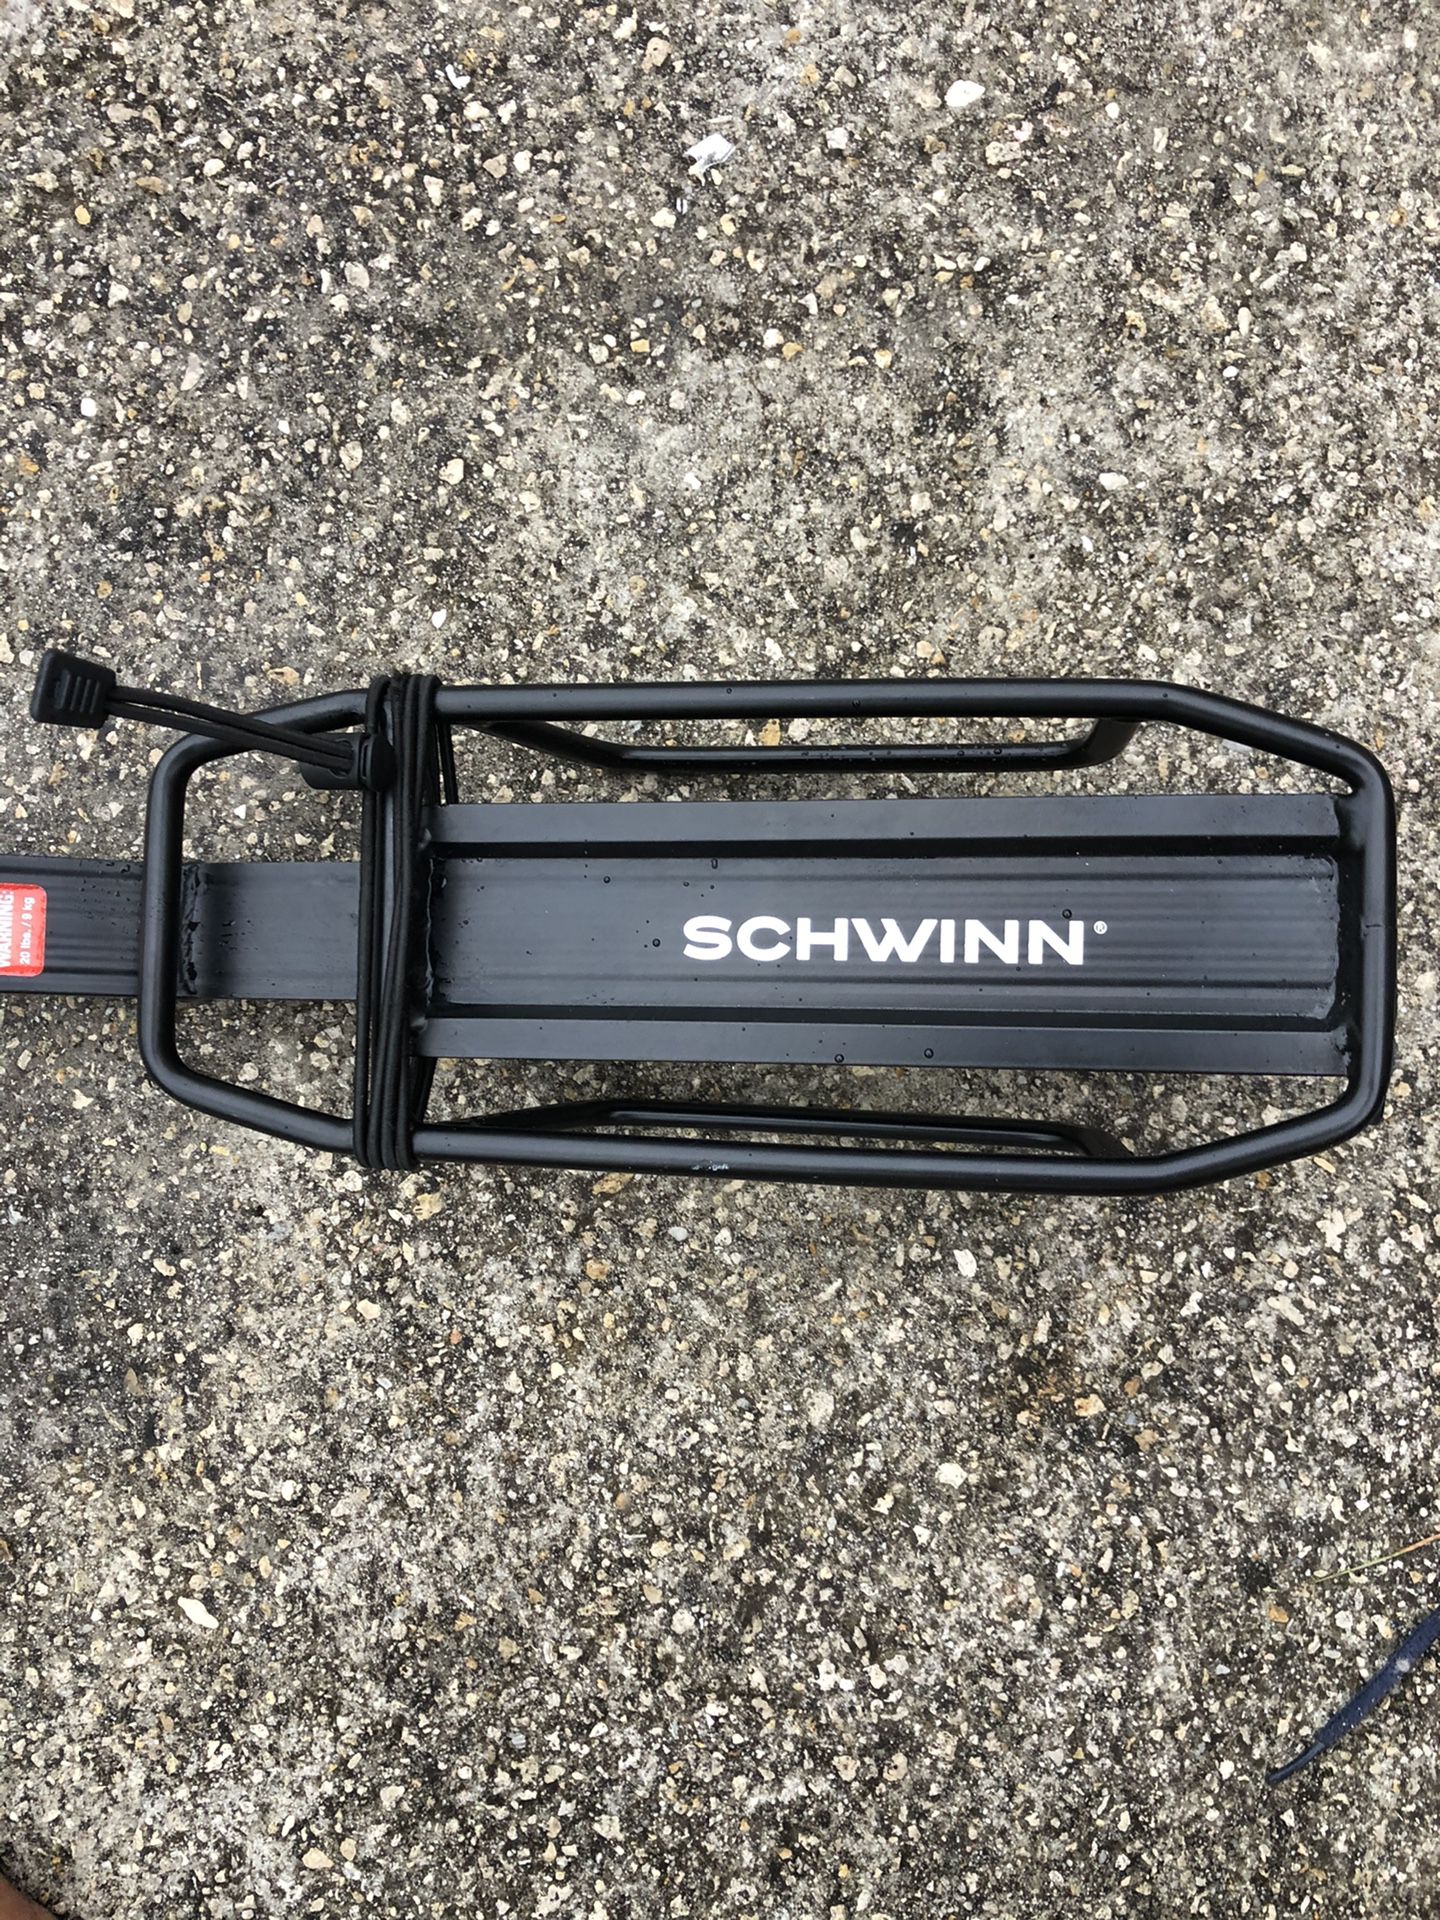 Schwinn cargo holder for bike